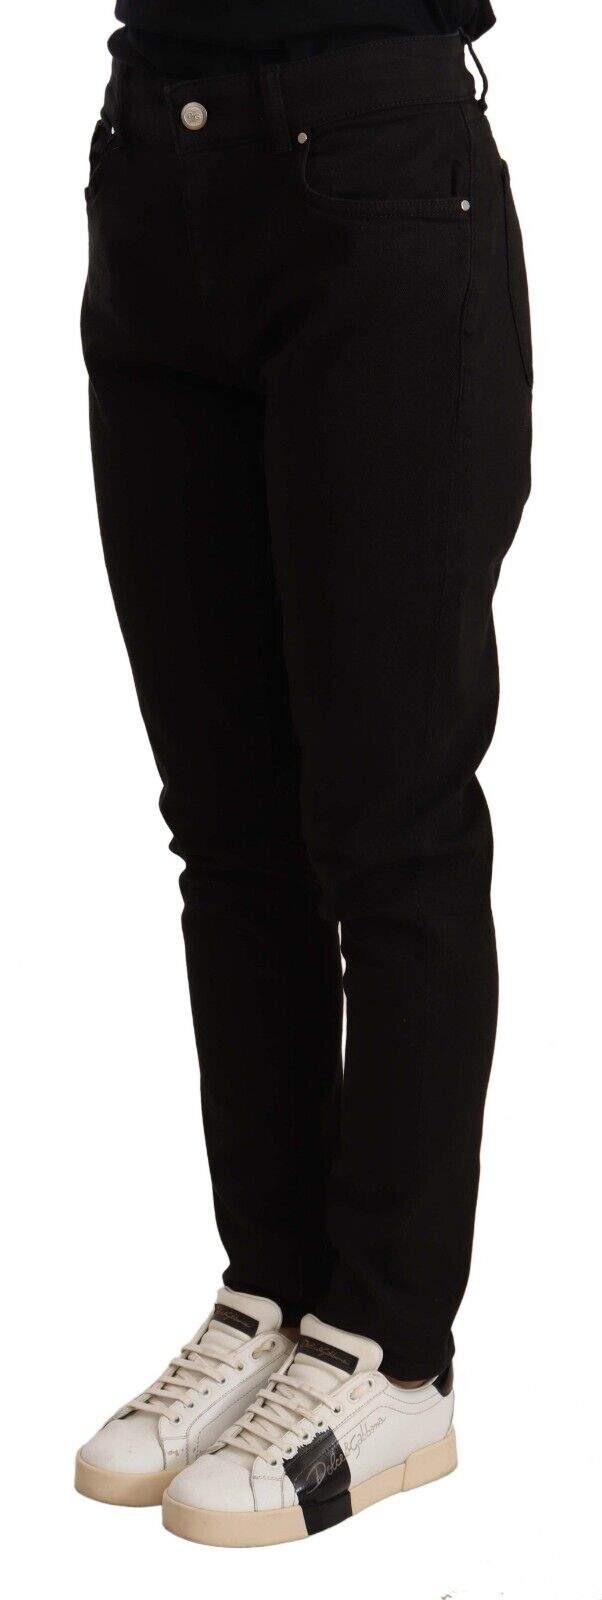 Dolce & Gabbana Black Skinny Slim Denim Cotton Stretch Jeans Black, Dolce & Gabbana, feed-1, IT44|L, Jeans & Pants - Women - Clothing at SEYMAYKA